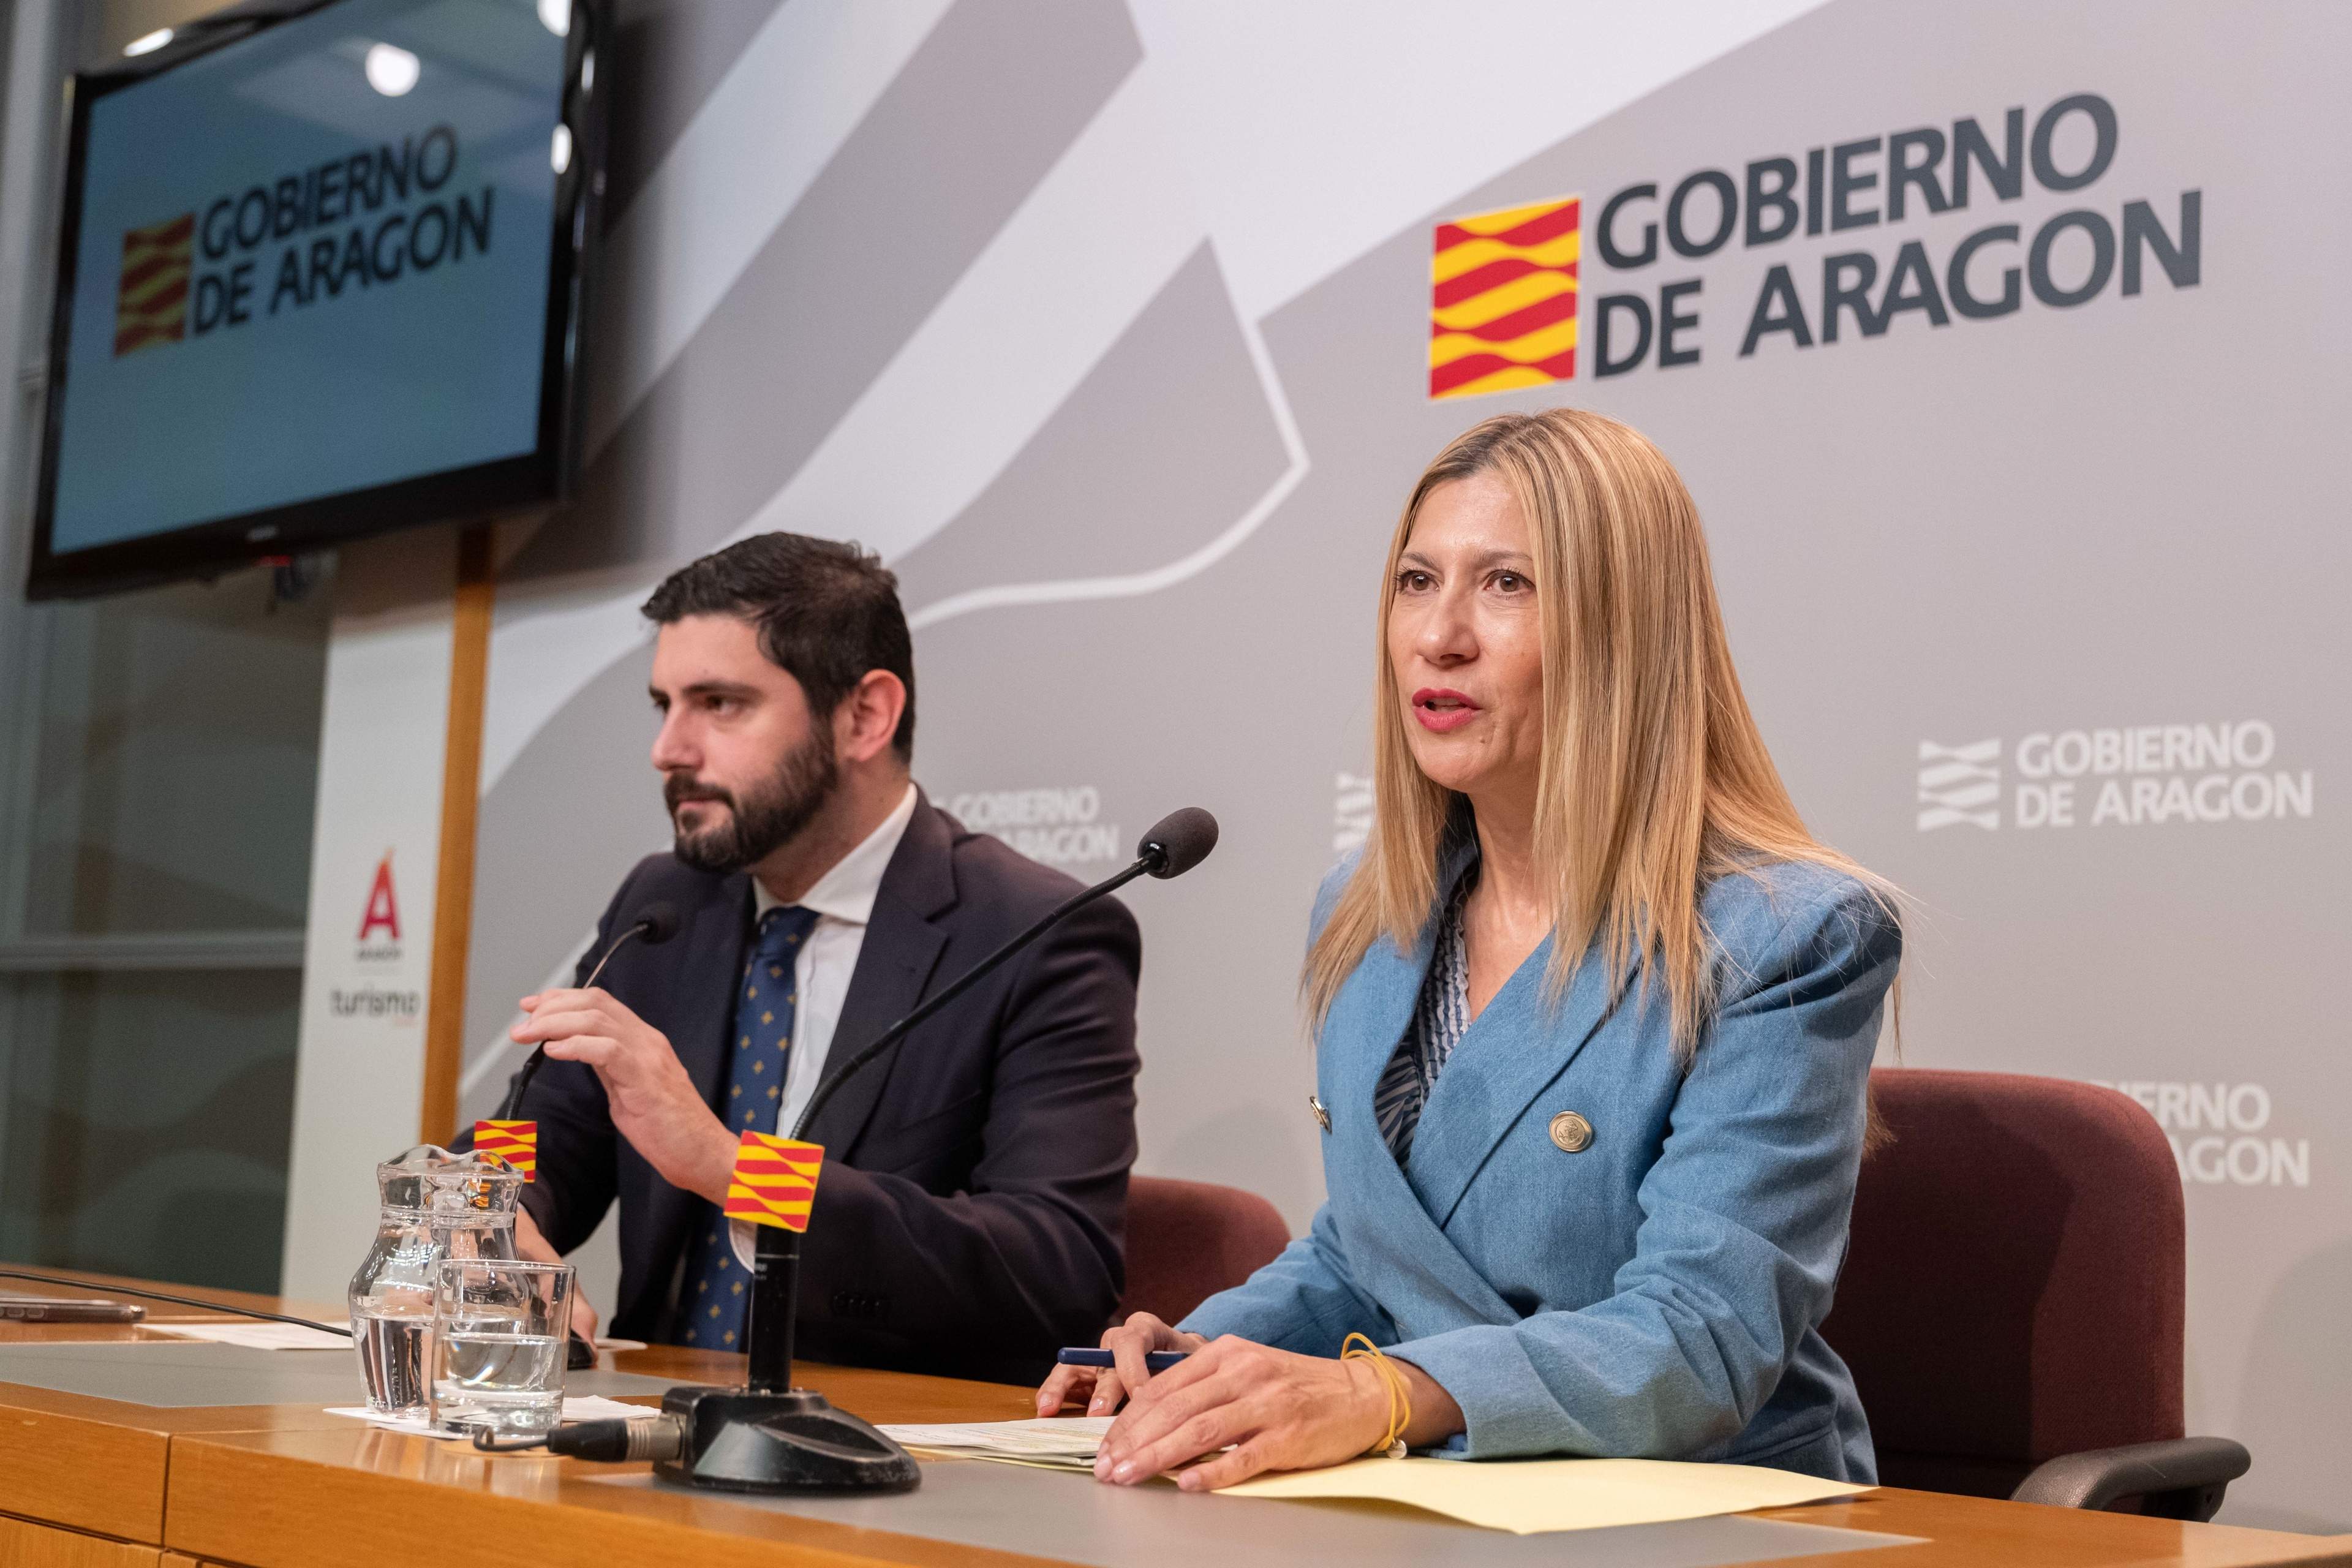 El gobierno de Aragón recurrirá la ley de amnistía al Constitucional y anima a otras comunidades a hacerlo